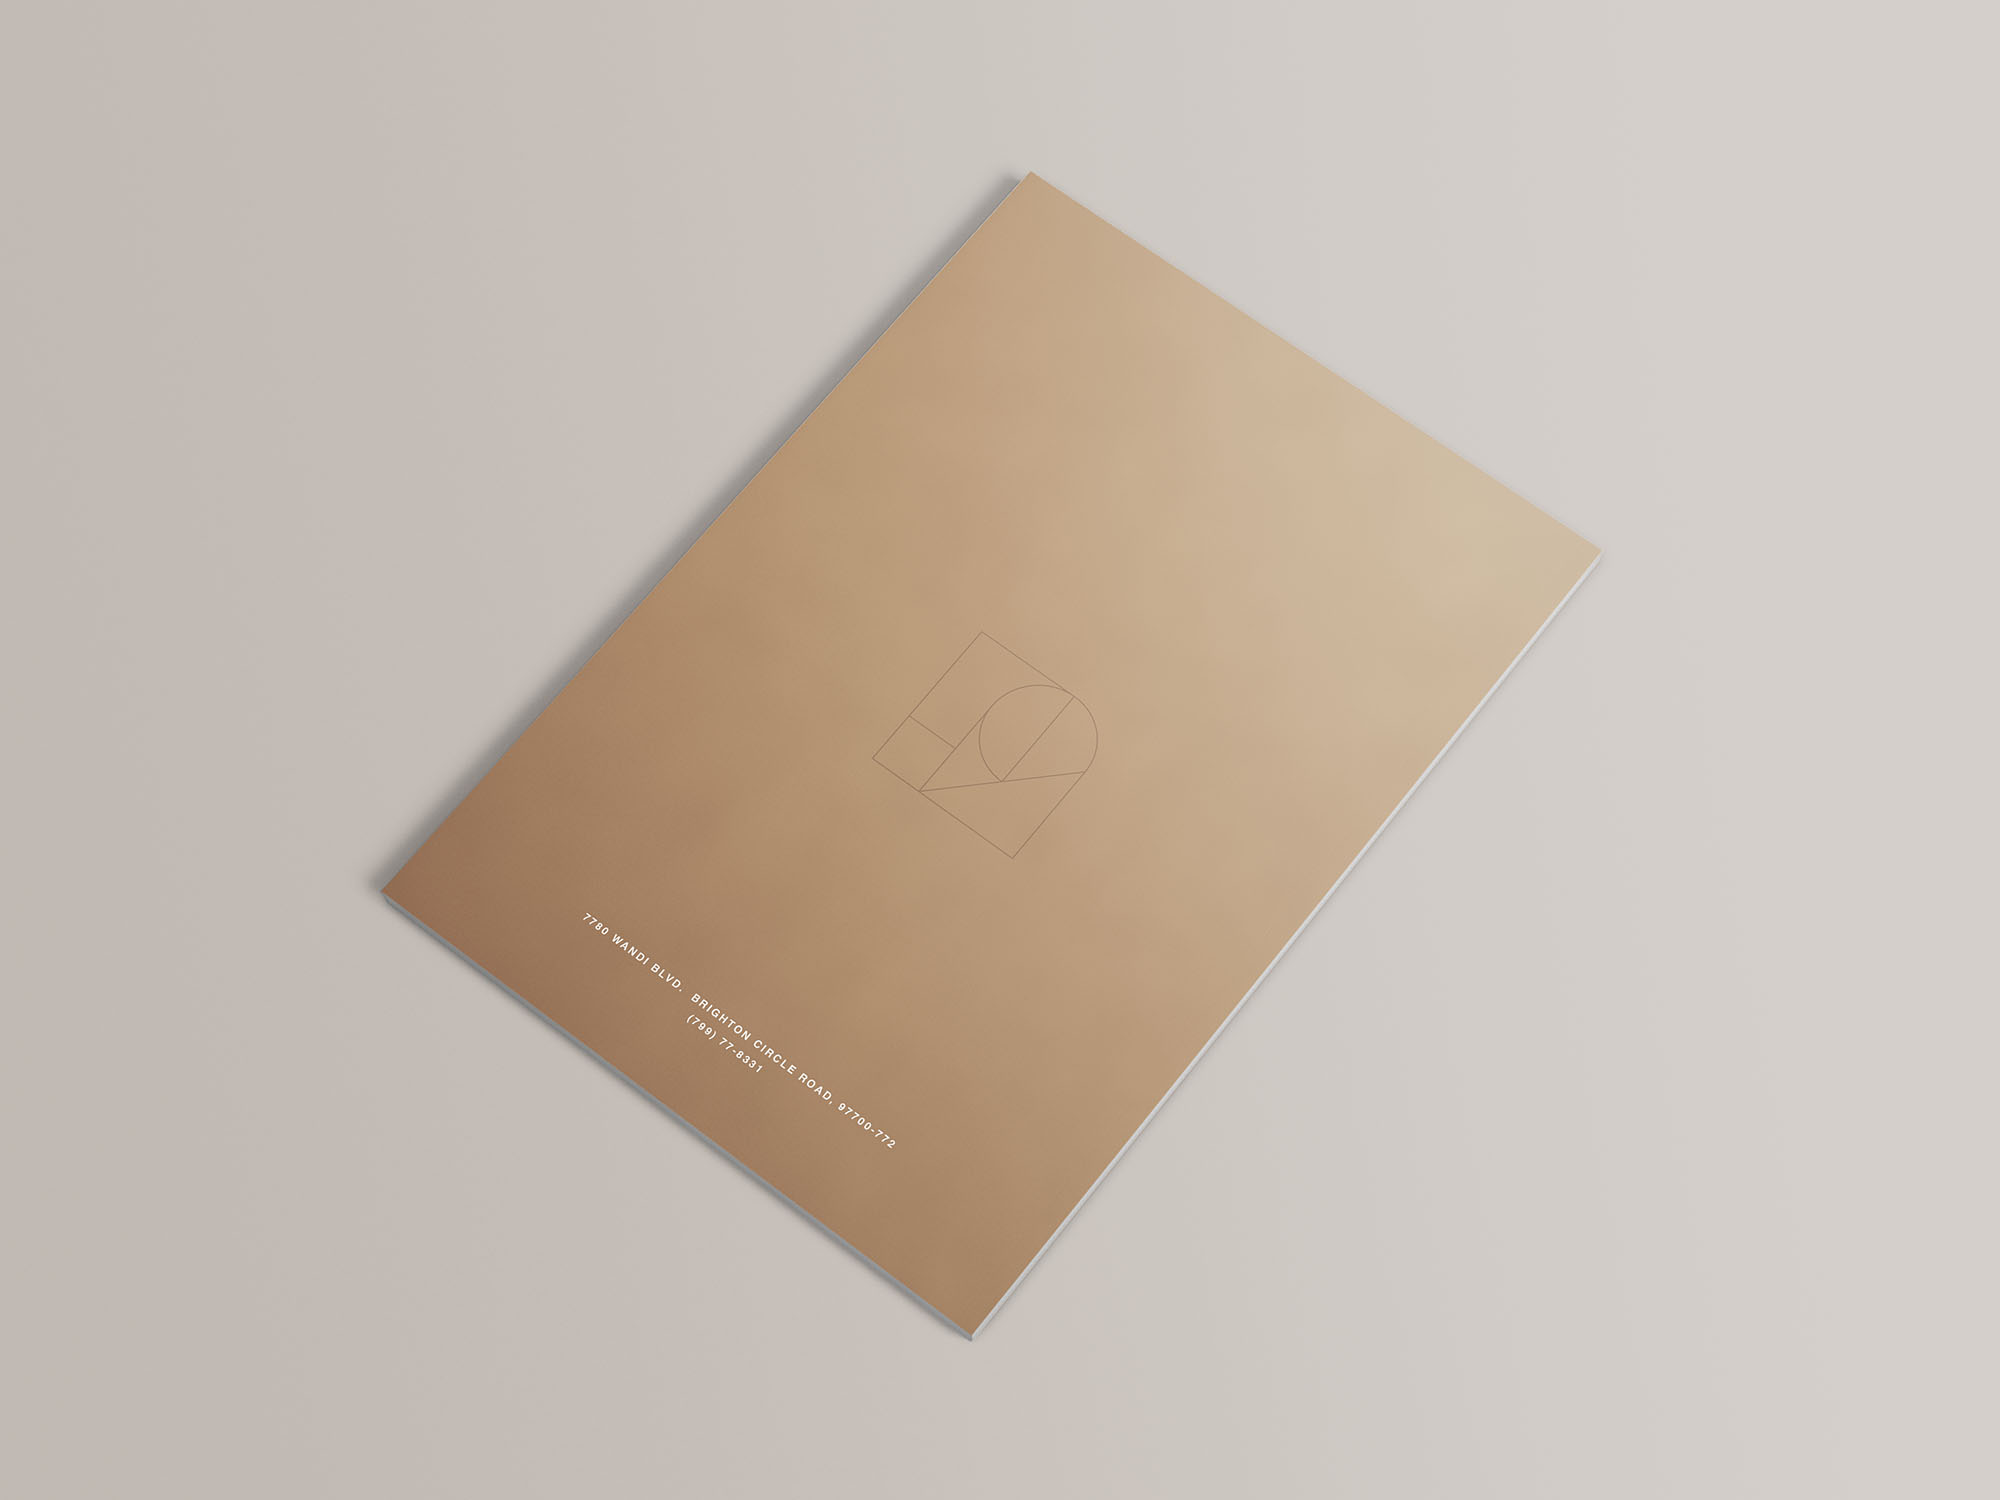 高品质极简主义A4杂志画册宣传册设计提案展示样机模板 16